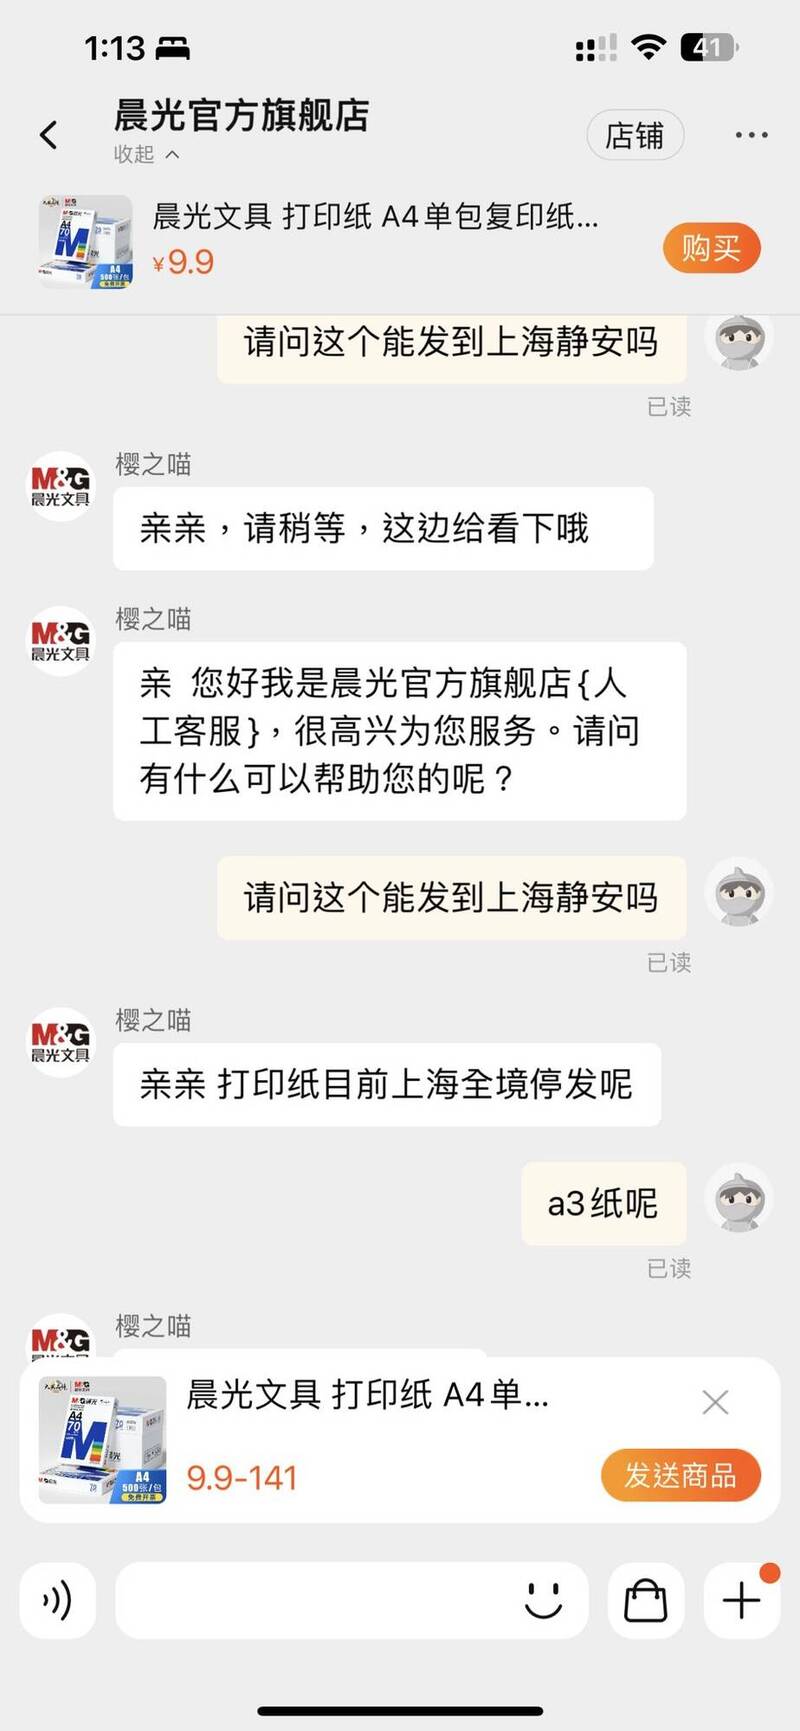 另外一名网友也试着向该文具商下单A4影印纸，客服人员则向他表示「上海全境停止发货」。（撷取自推特）(photo:LTN)